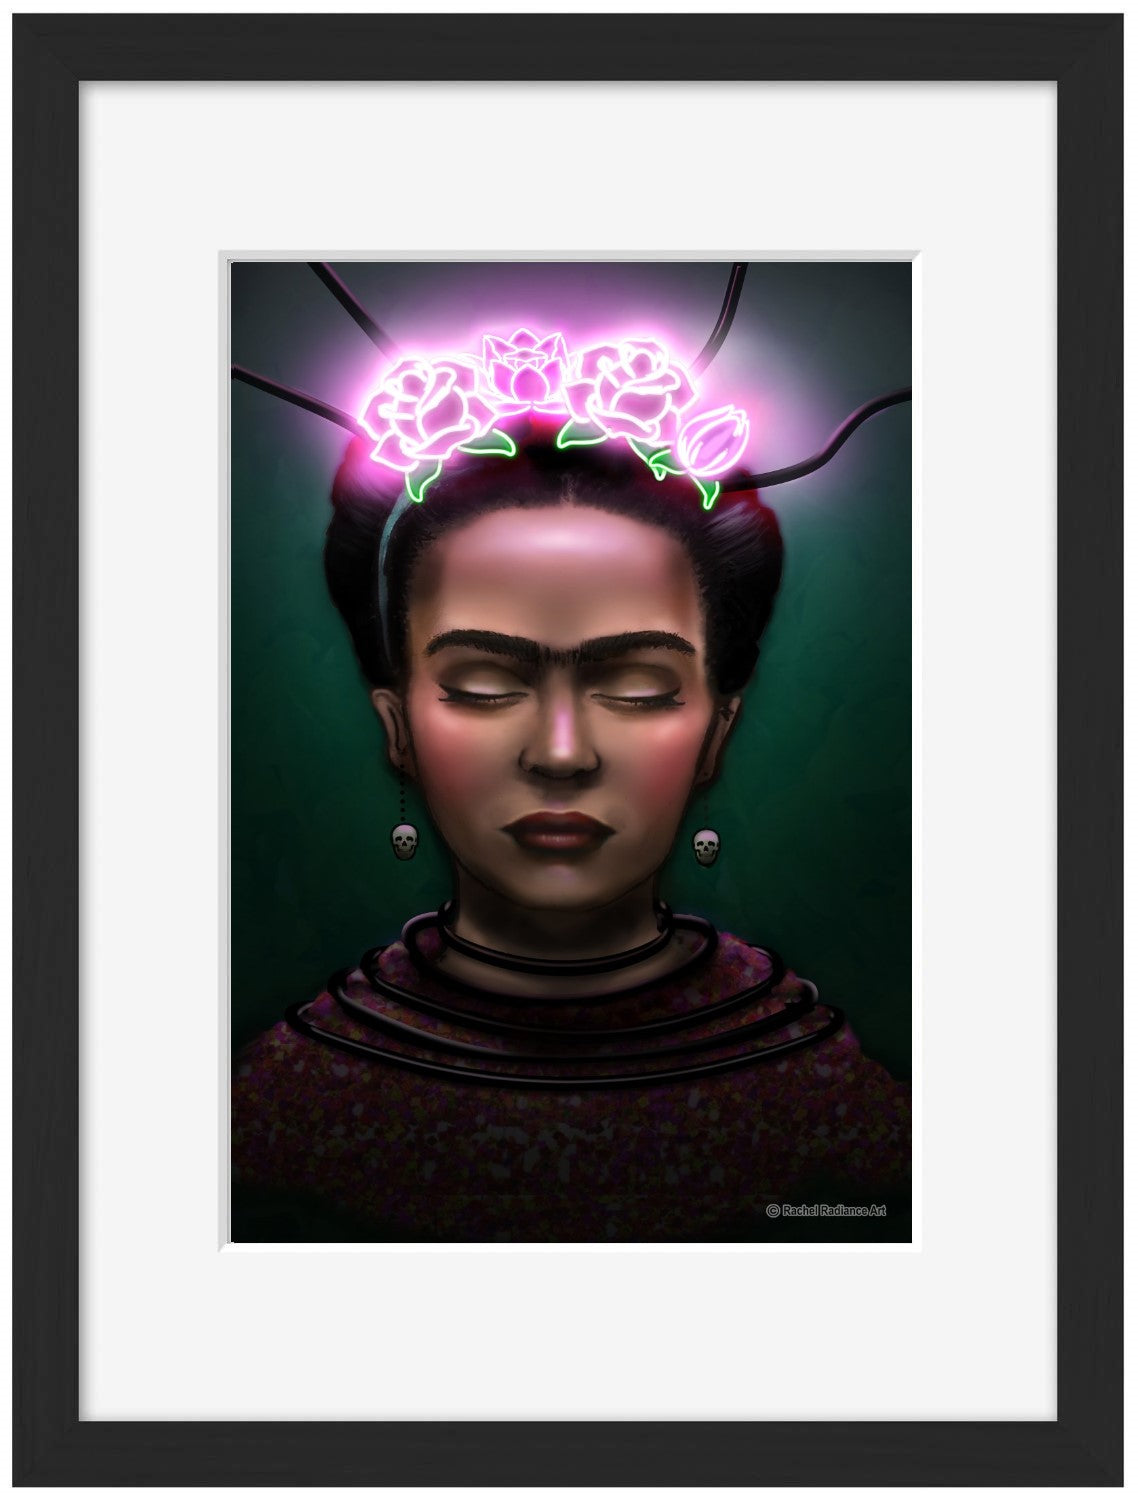 Frida-neon-art, print-Framed Print-30 x 40 cm-BLUE SHAKER